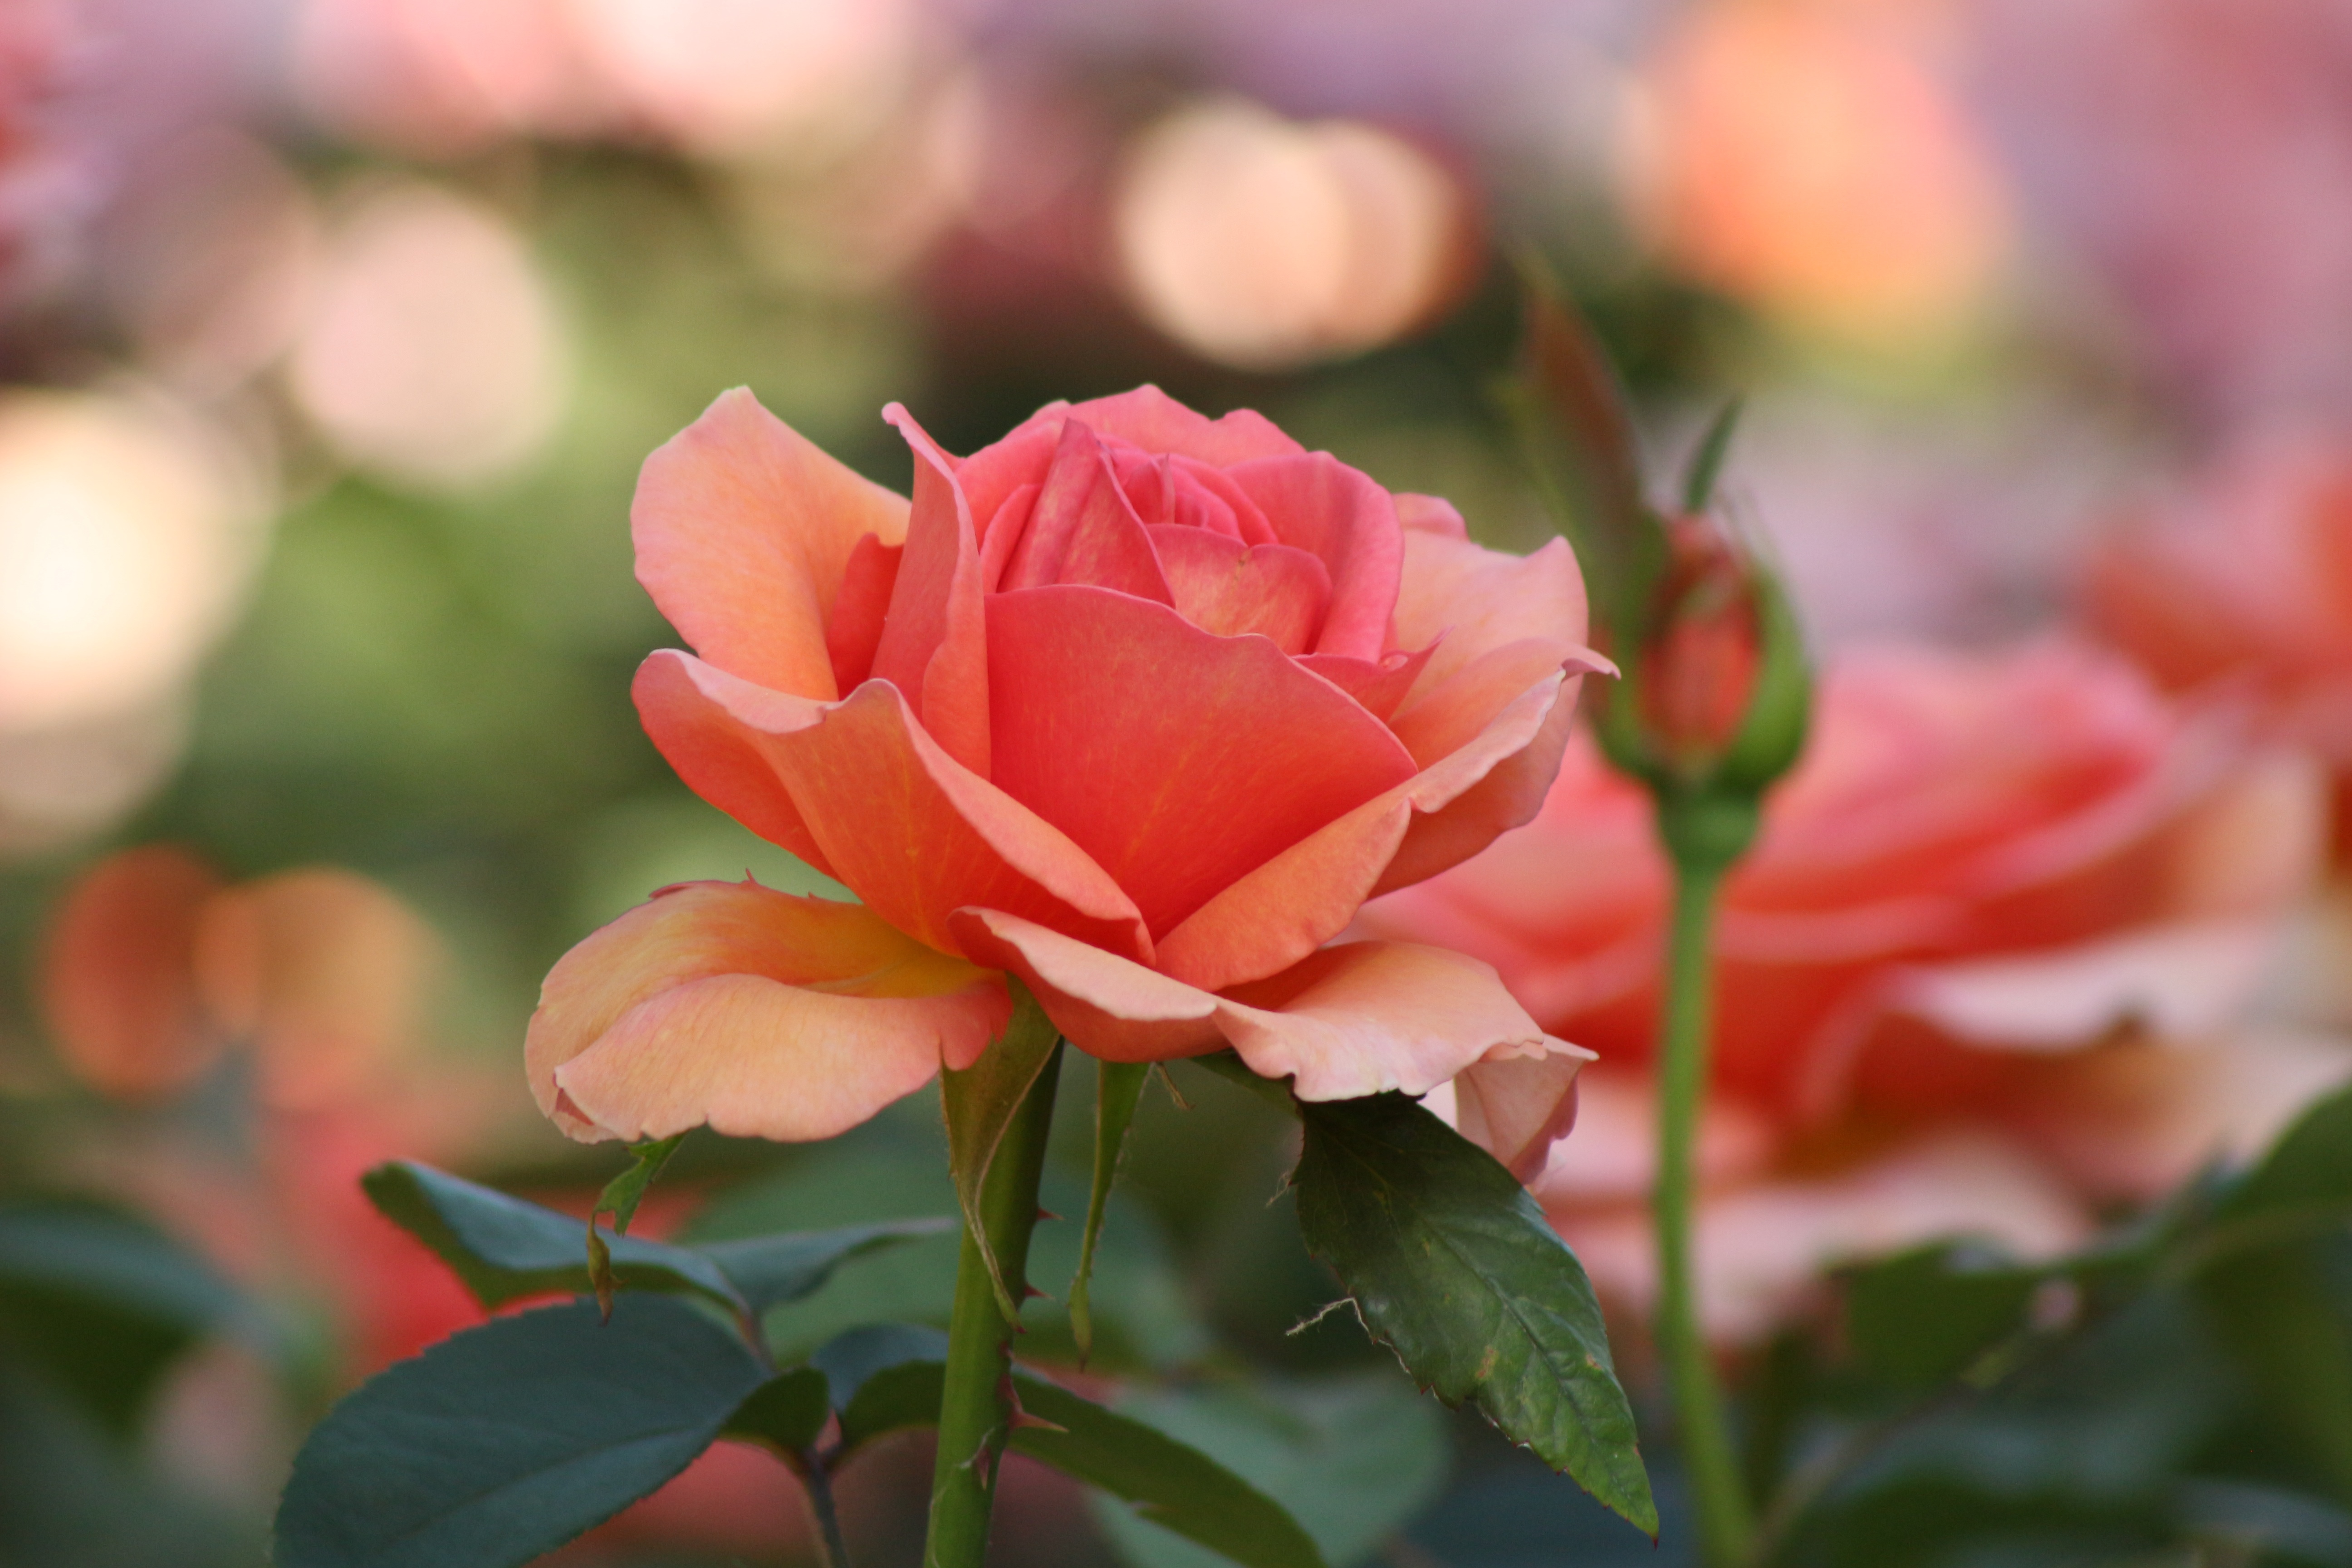 Обои роза оригинальная красочная на рабочий стол